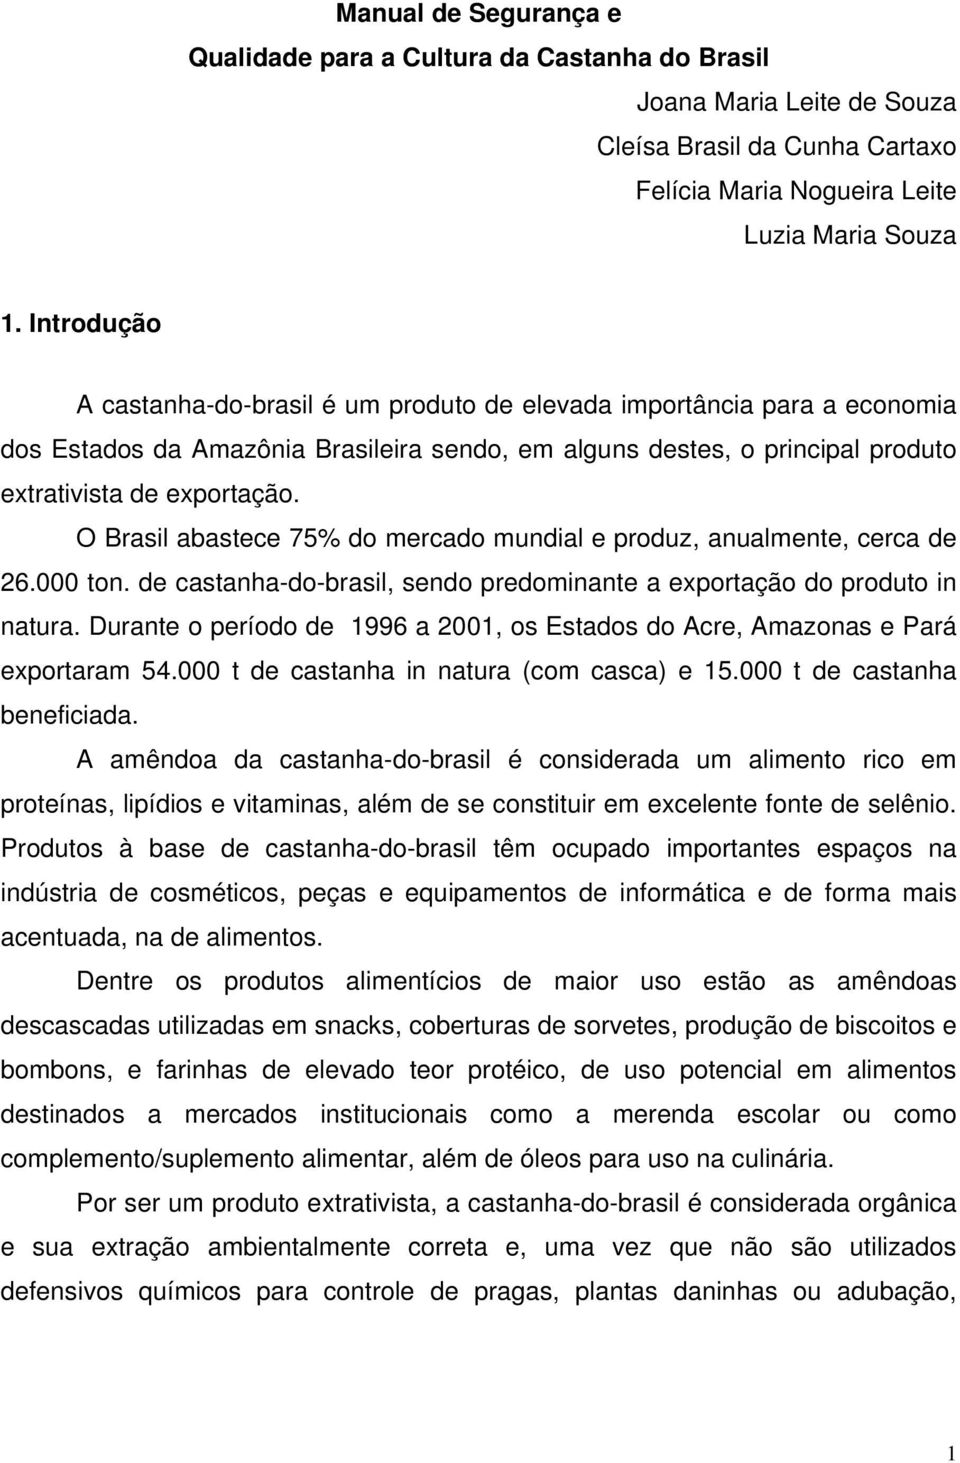 O Brasil abastece 75% do mercado mundial e produz, anualmente, cerca de 26.000 ton. de castanha-do-brasil, sendo predominante a exportação do produto in natura.